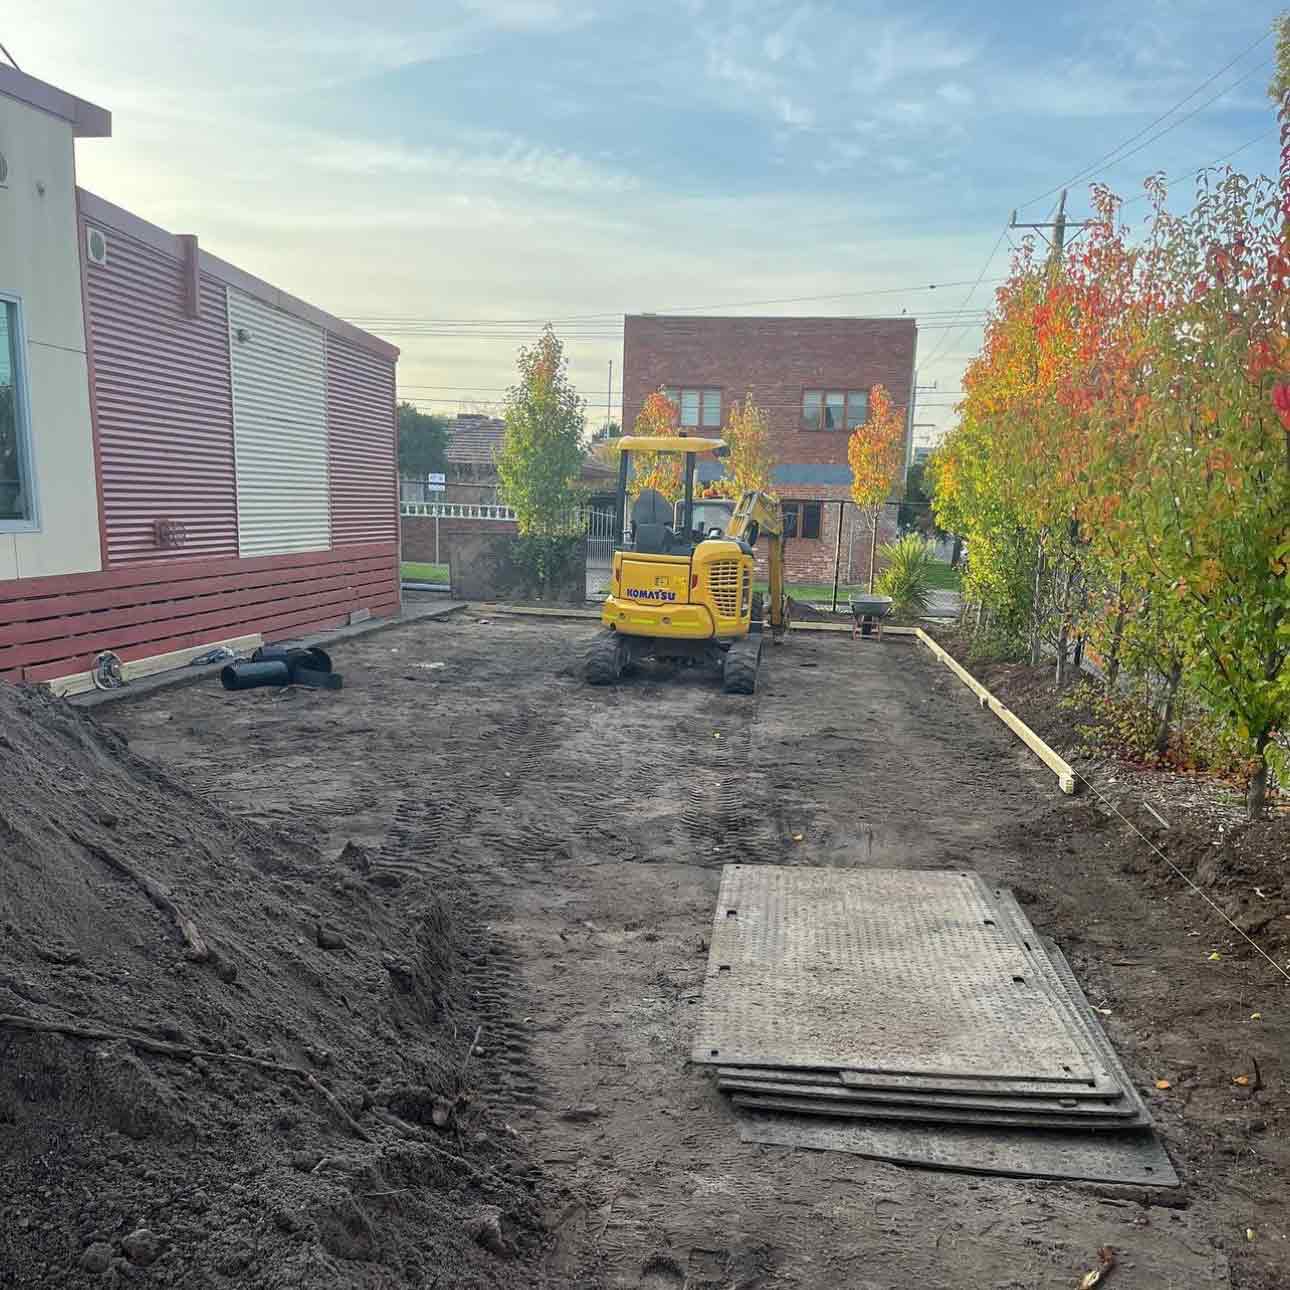 Mentone Primary School preparing their school yard for a new Gaga Ball Pit